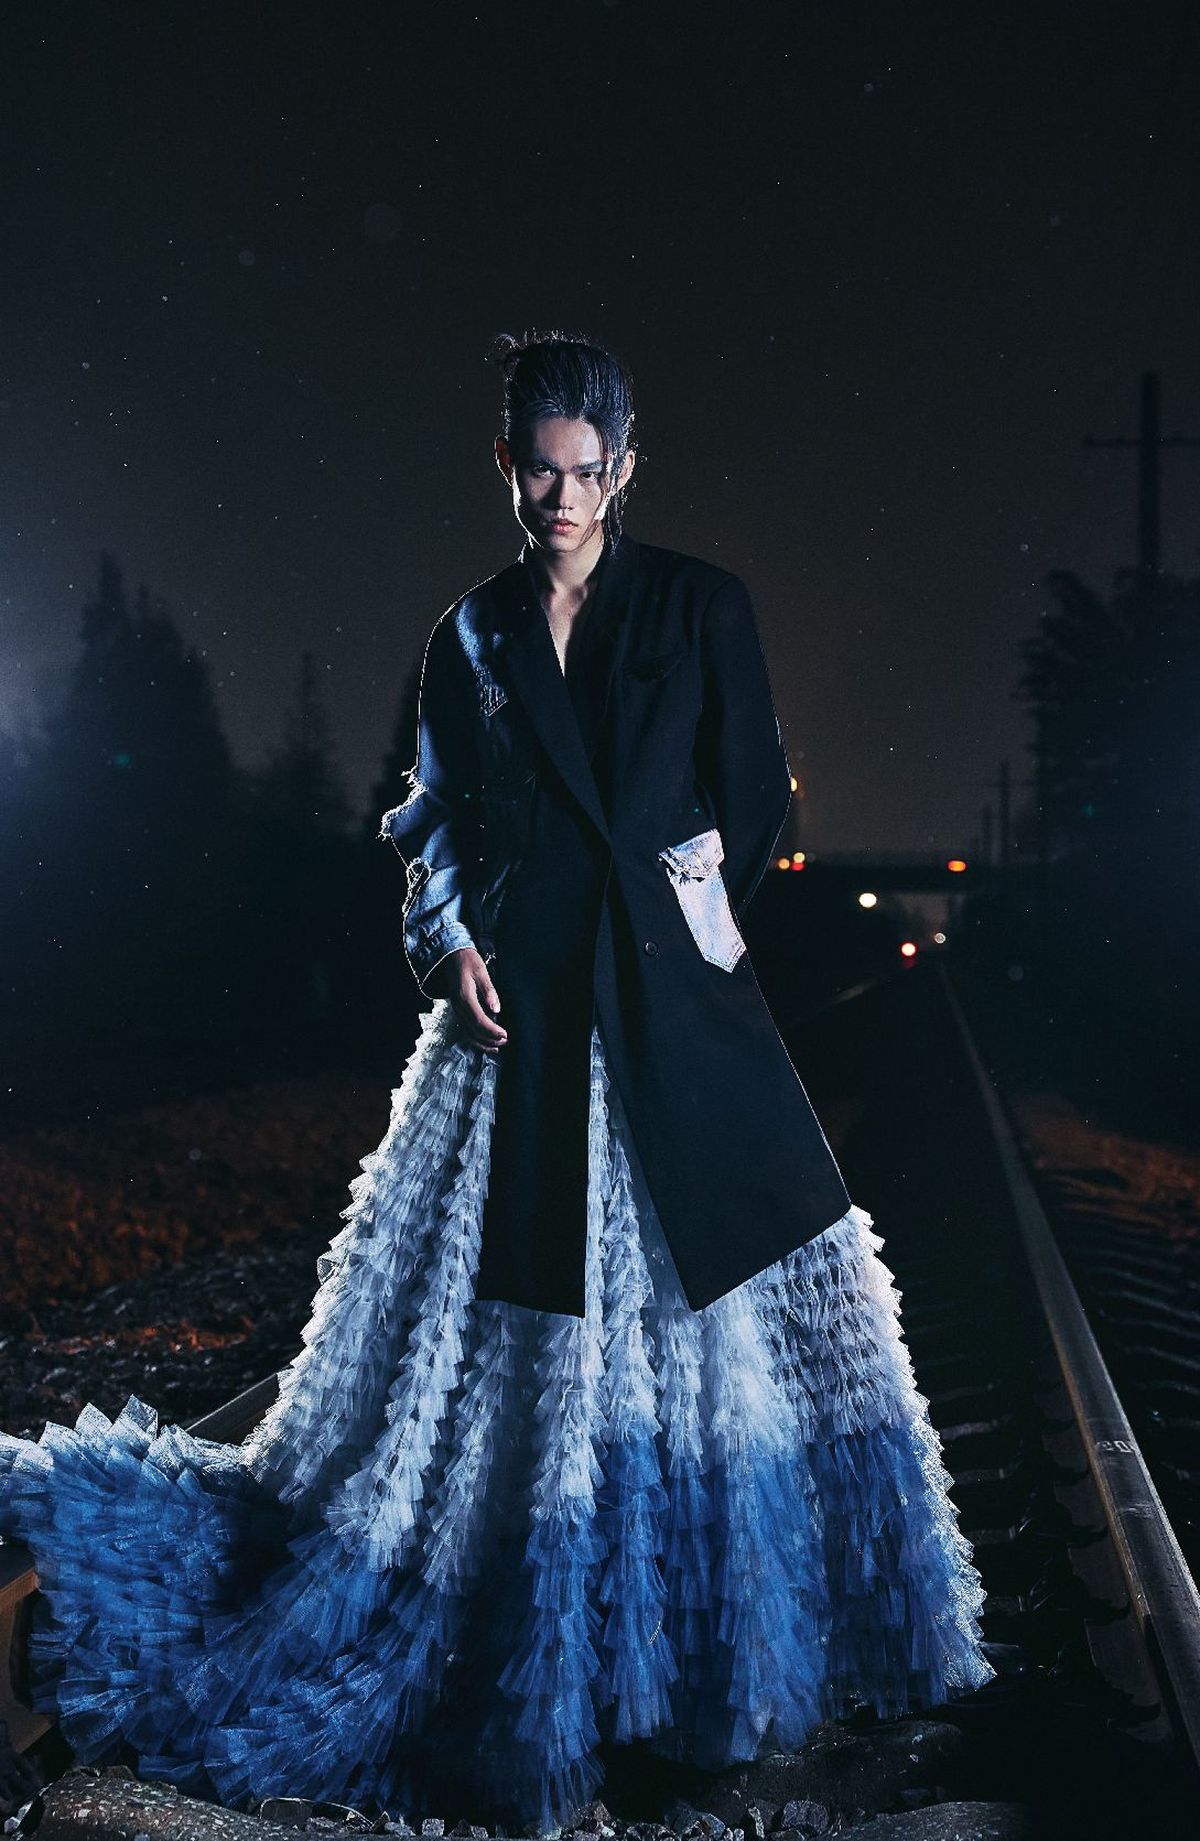 穿着蓝色连衣裙和外套的模特子在夜晚的铁轨上